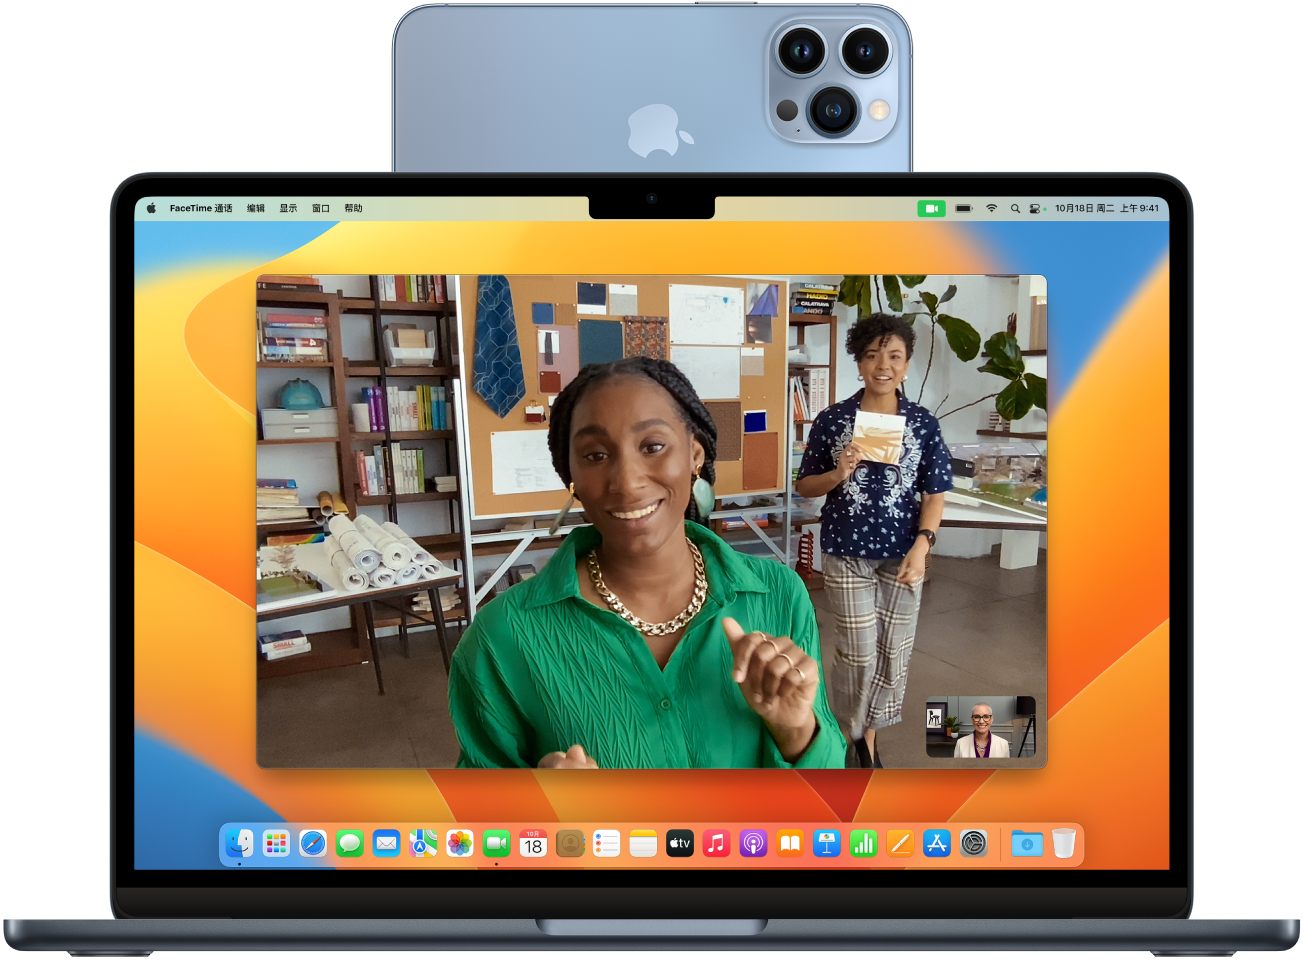 Mac 及用作网络摄像头且固定在显示器顶部的 iPhone。Mac 显示器上可见来自 iPhone 摄像头的图像。